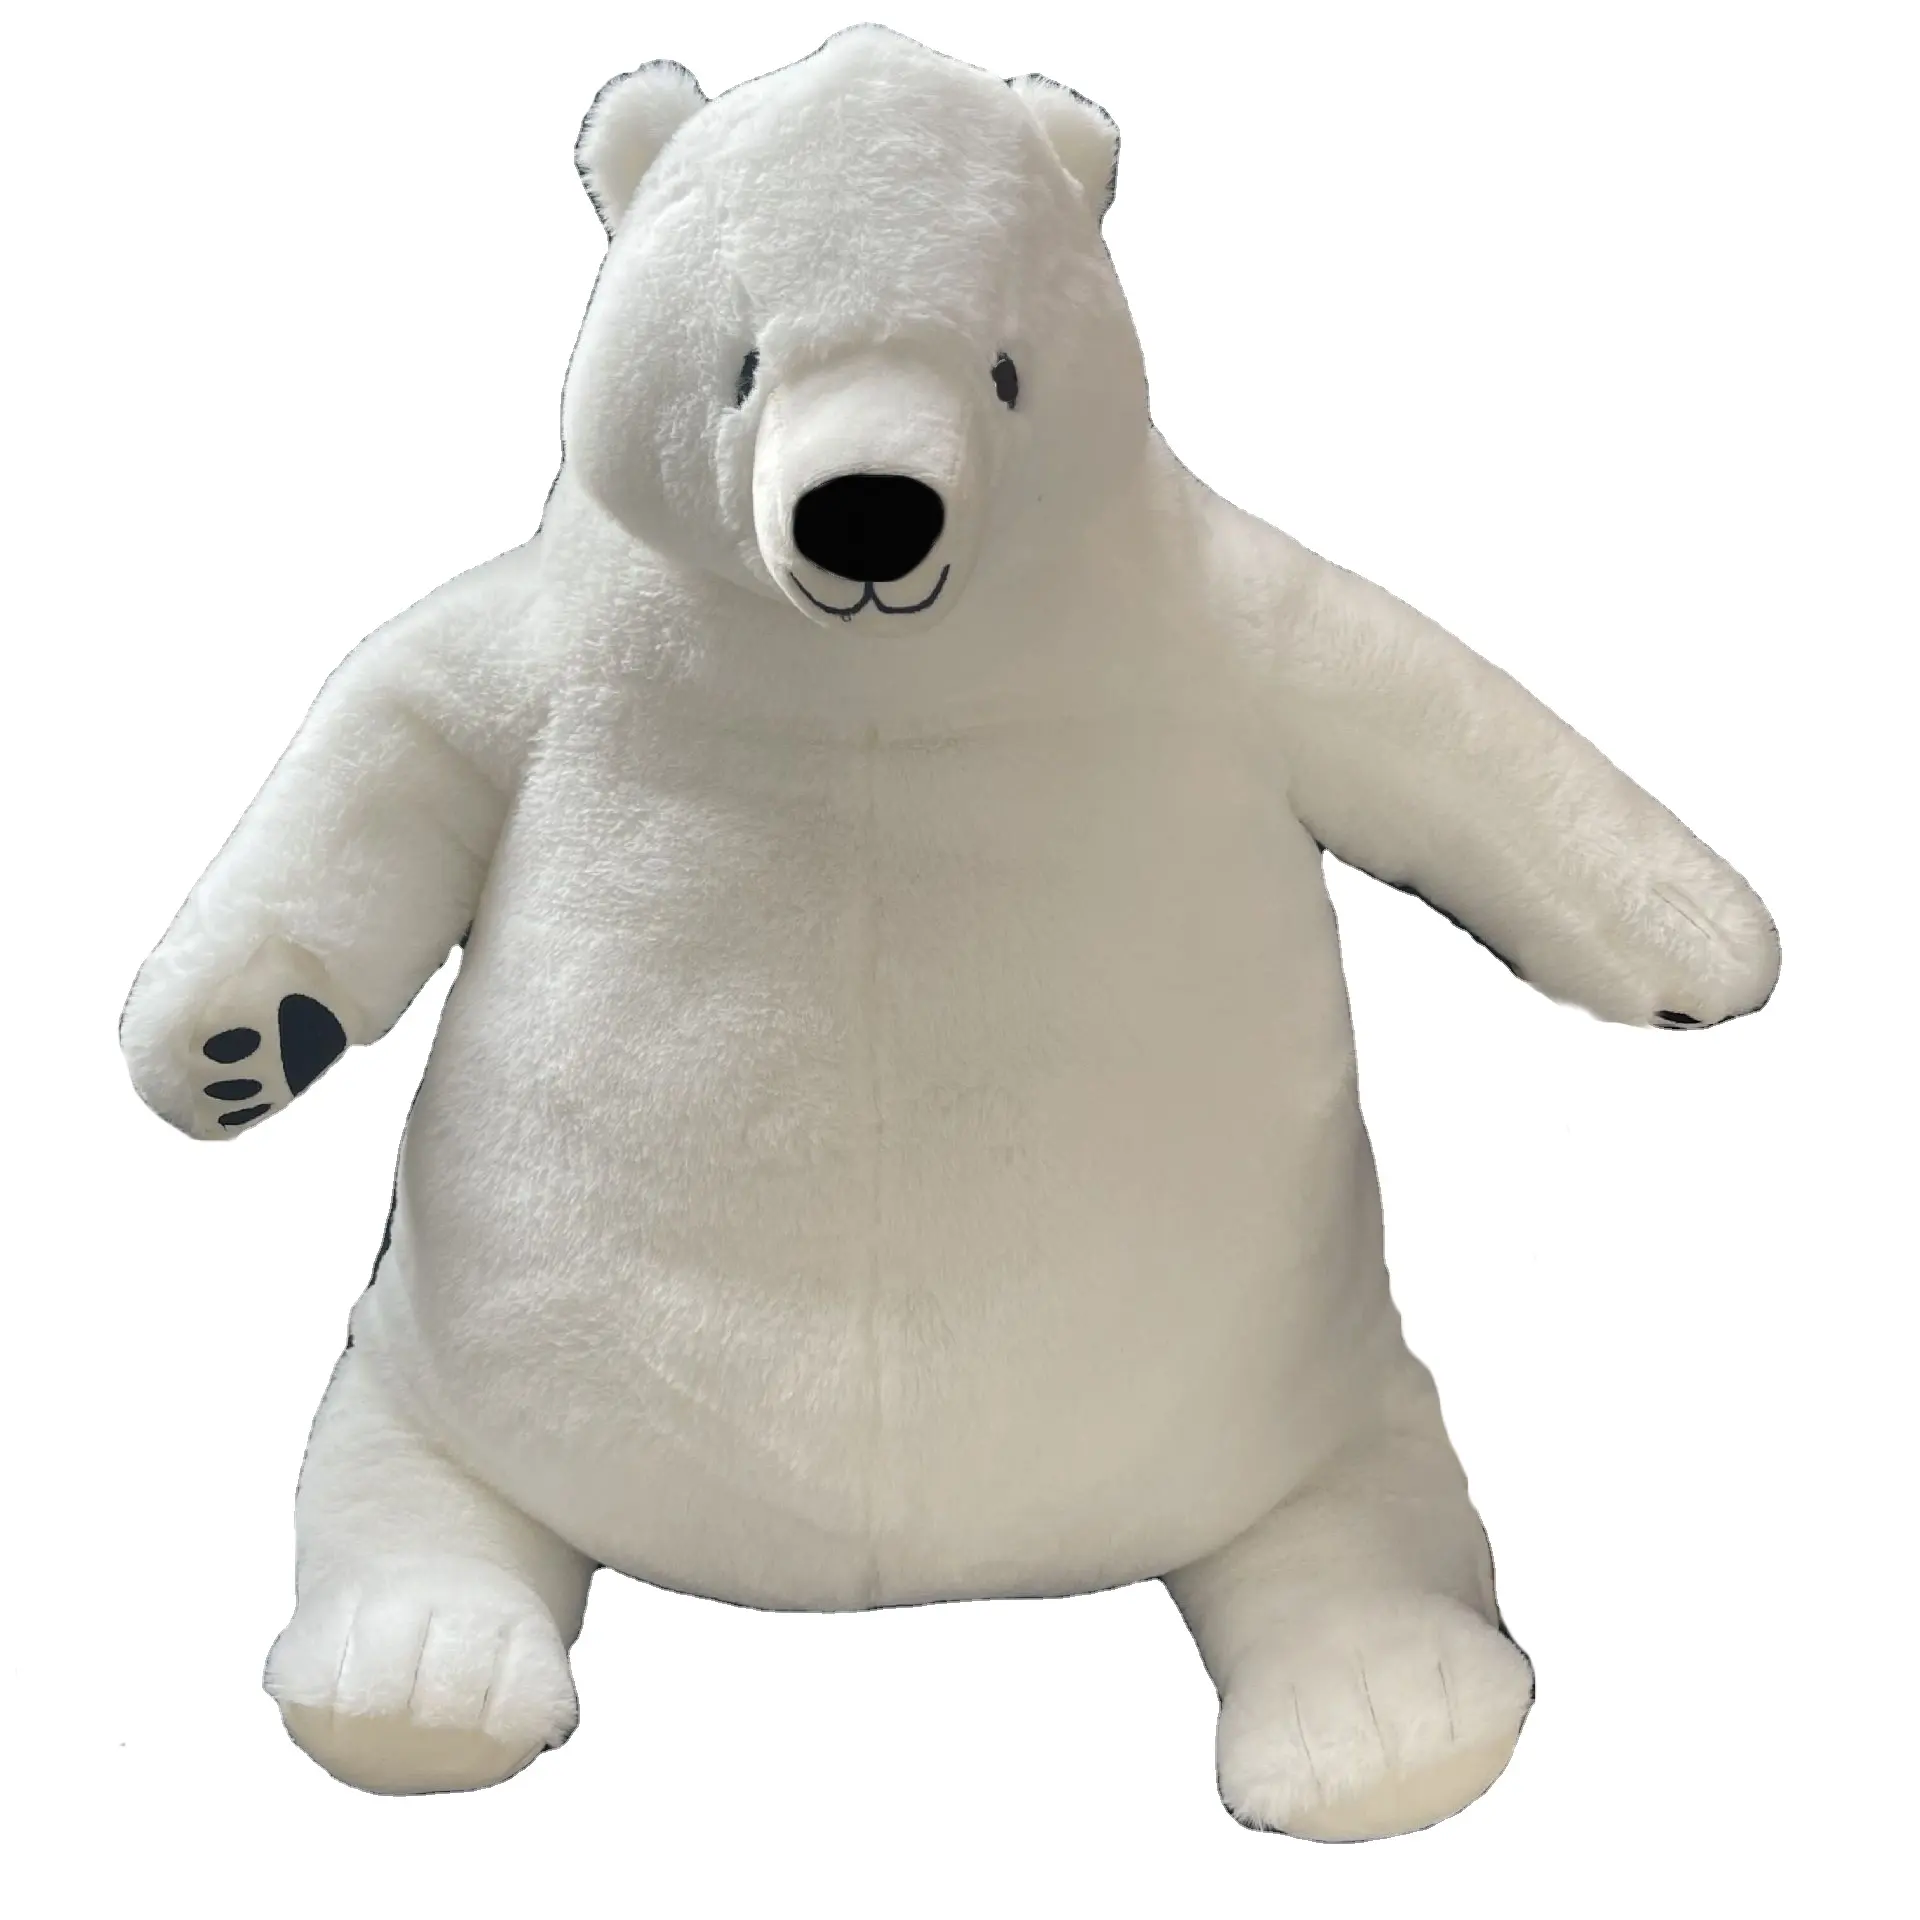 Fabricants en gros ours brun jouets en peluche ours polaire jouets en peluche simulation grand ours